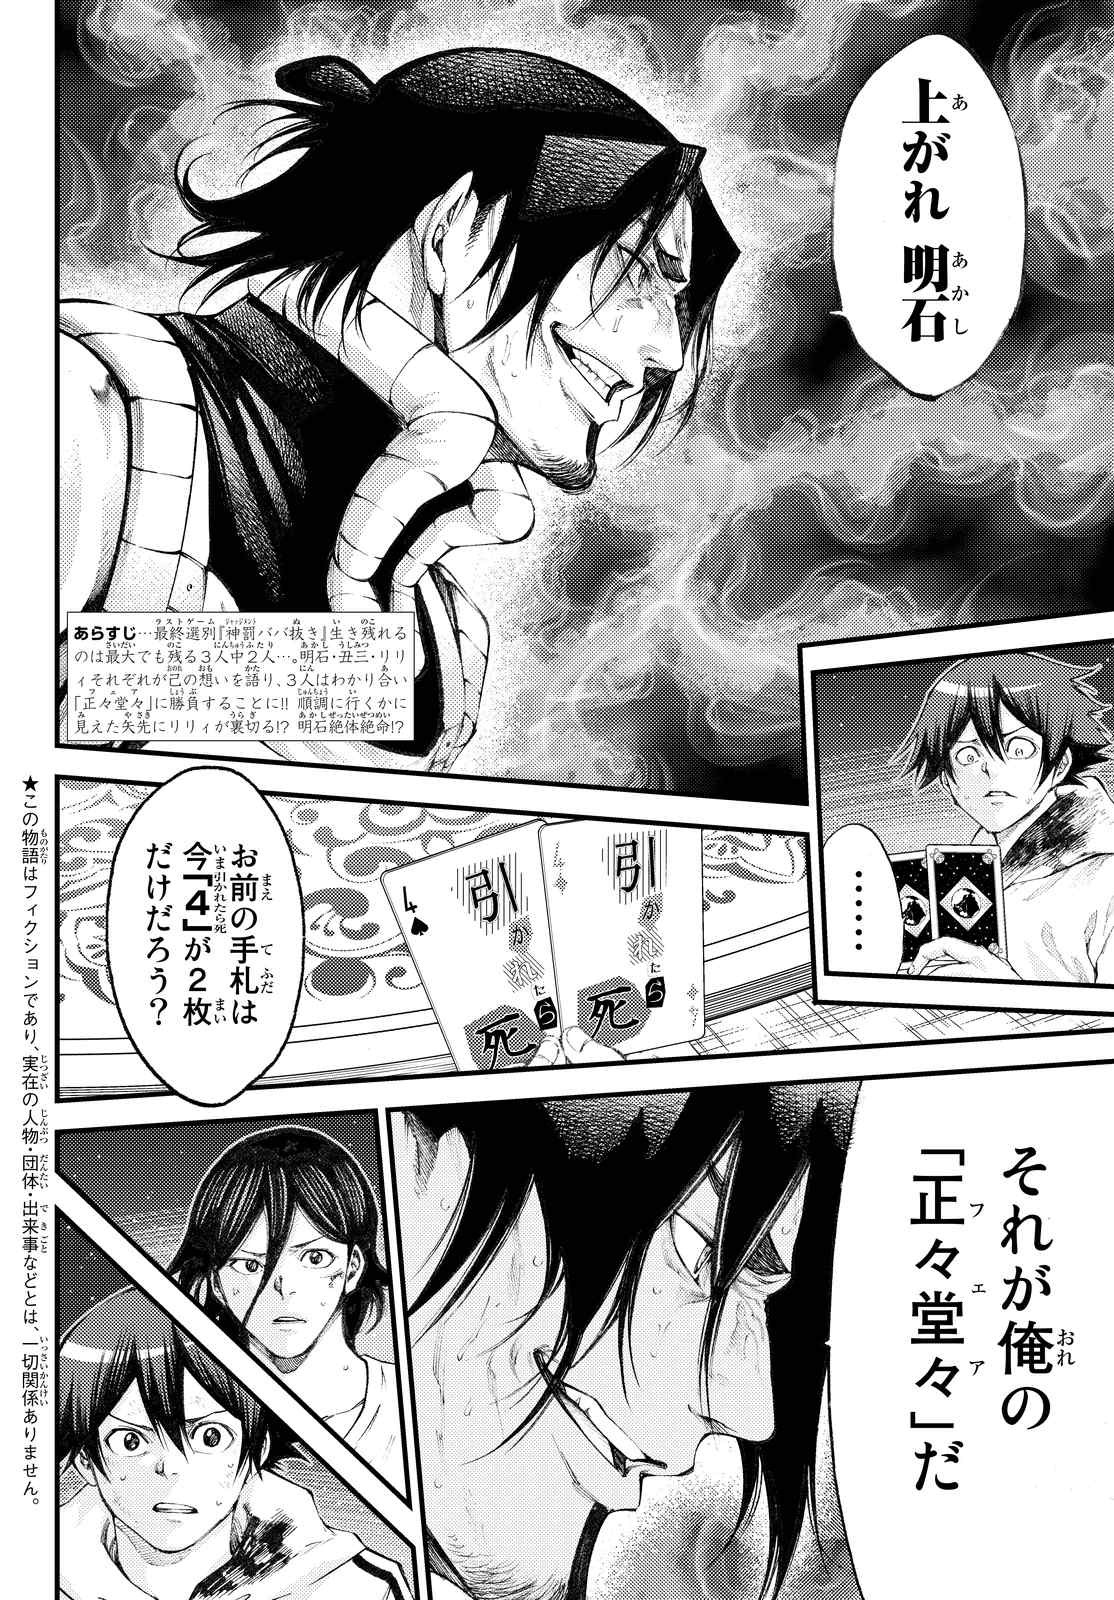 Kamisama_no_Ituori - Chapter 177 - Page 2